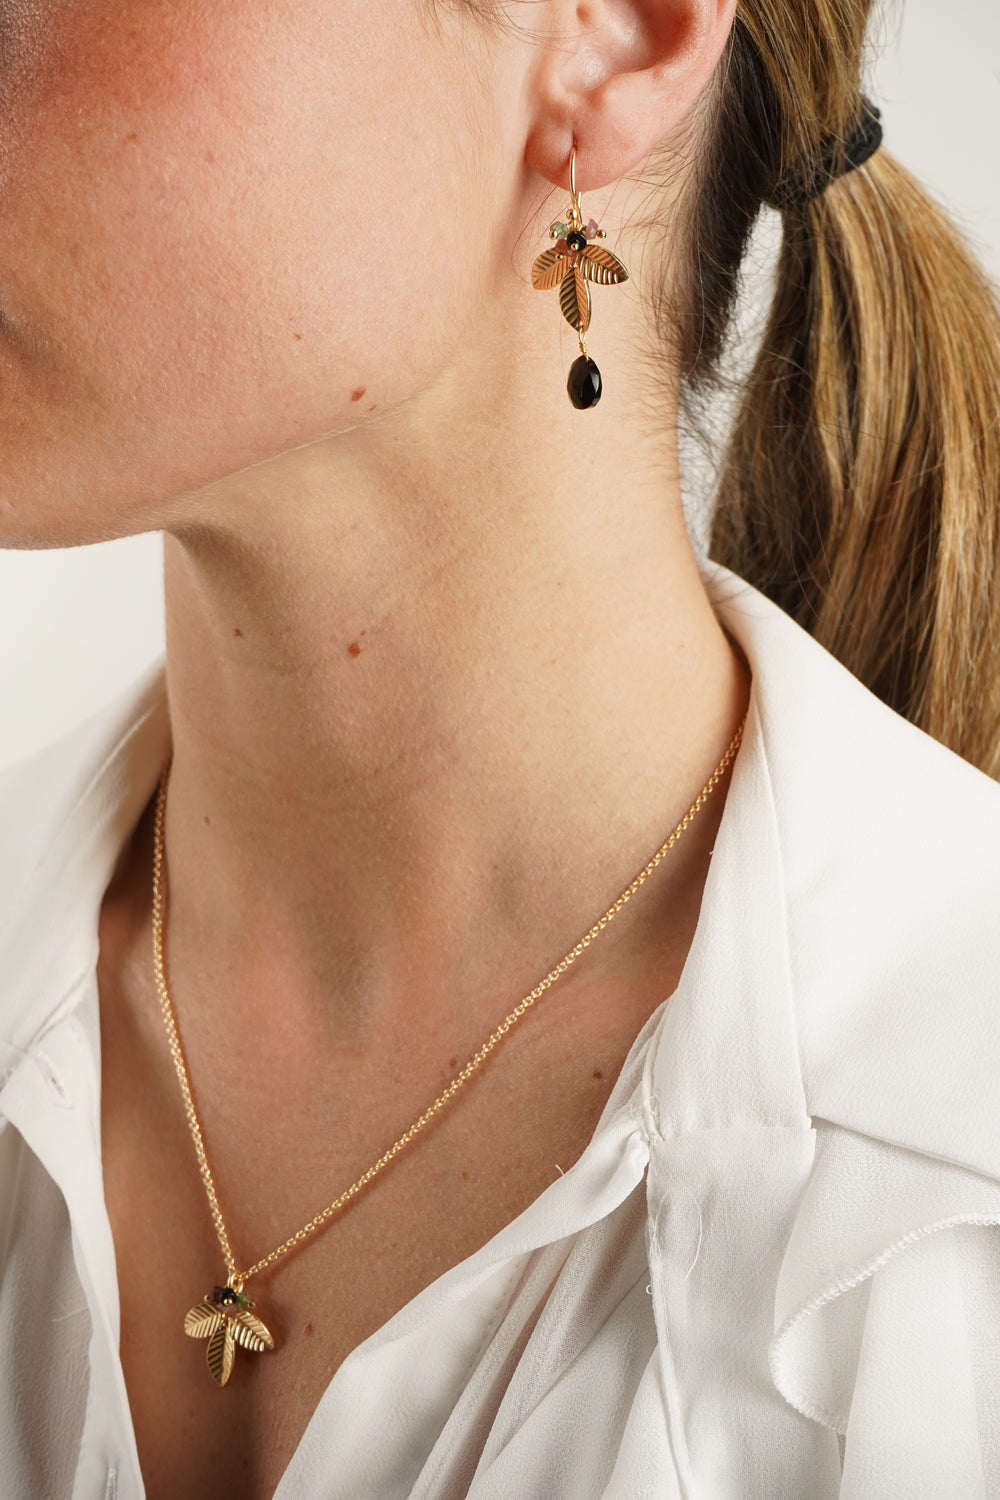 Detalle Puestos Combinación Collar & Pendientes Dorados Diseño Turmalinas Y Onyx Negra Cristina Oria